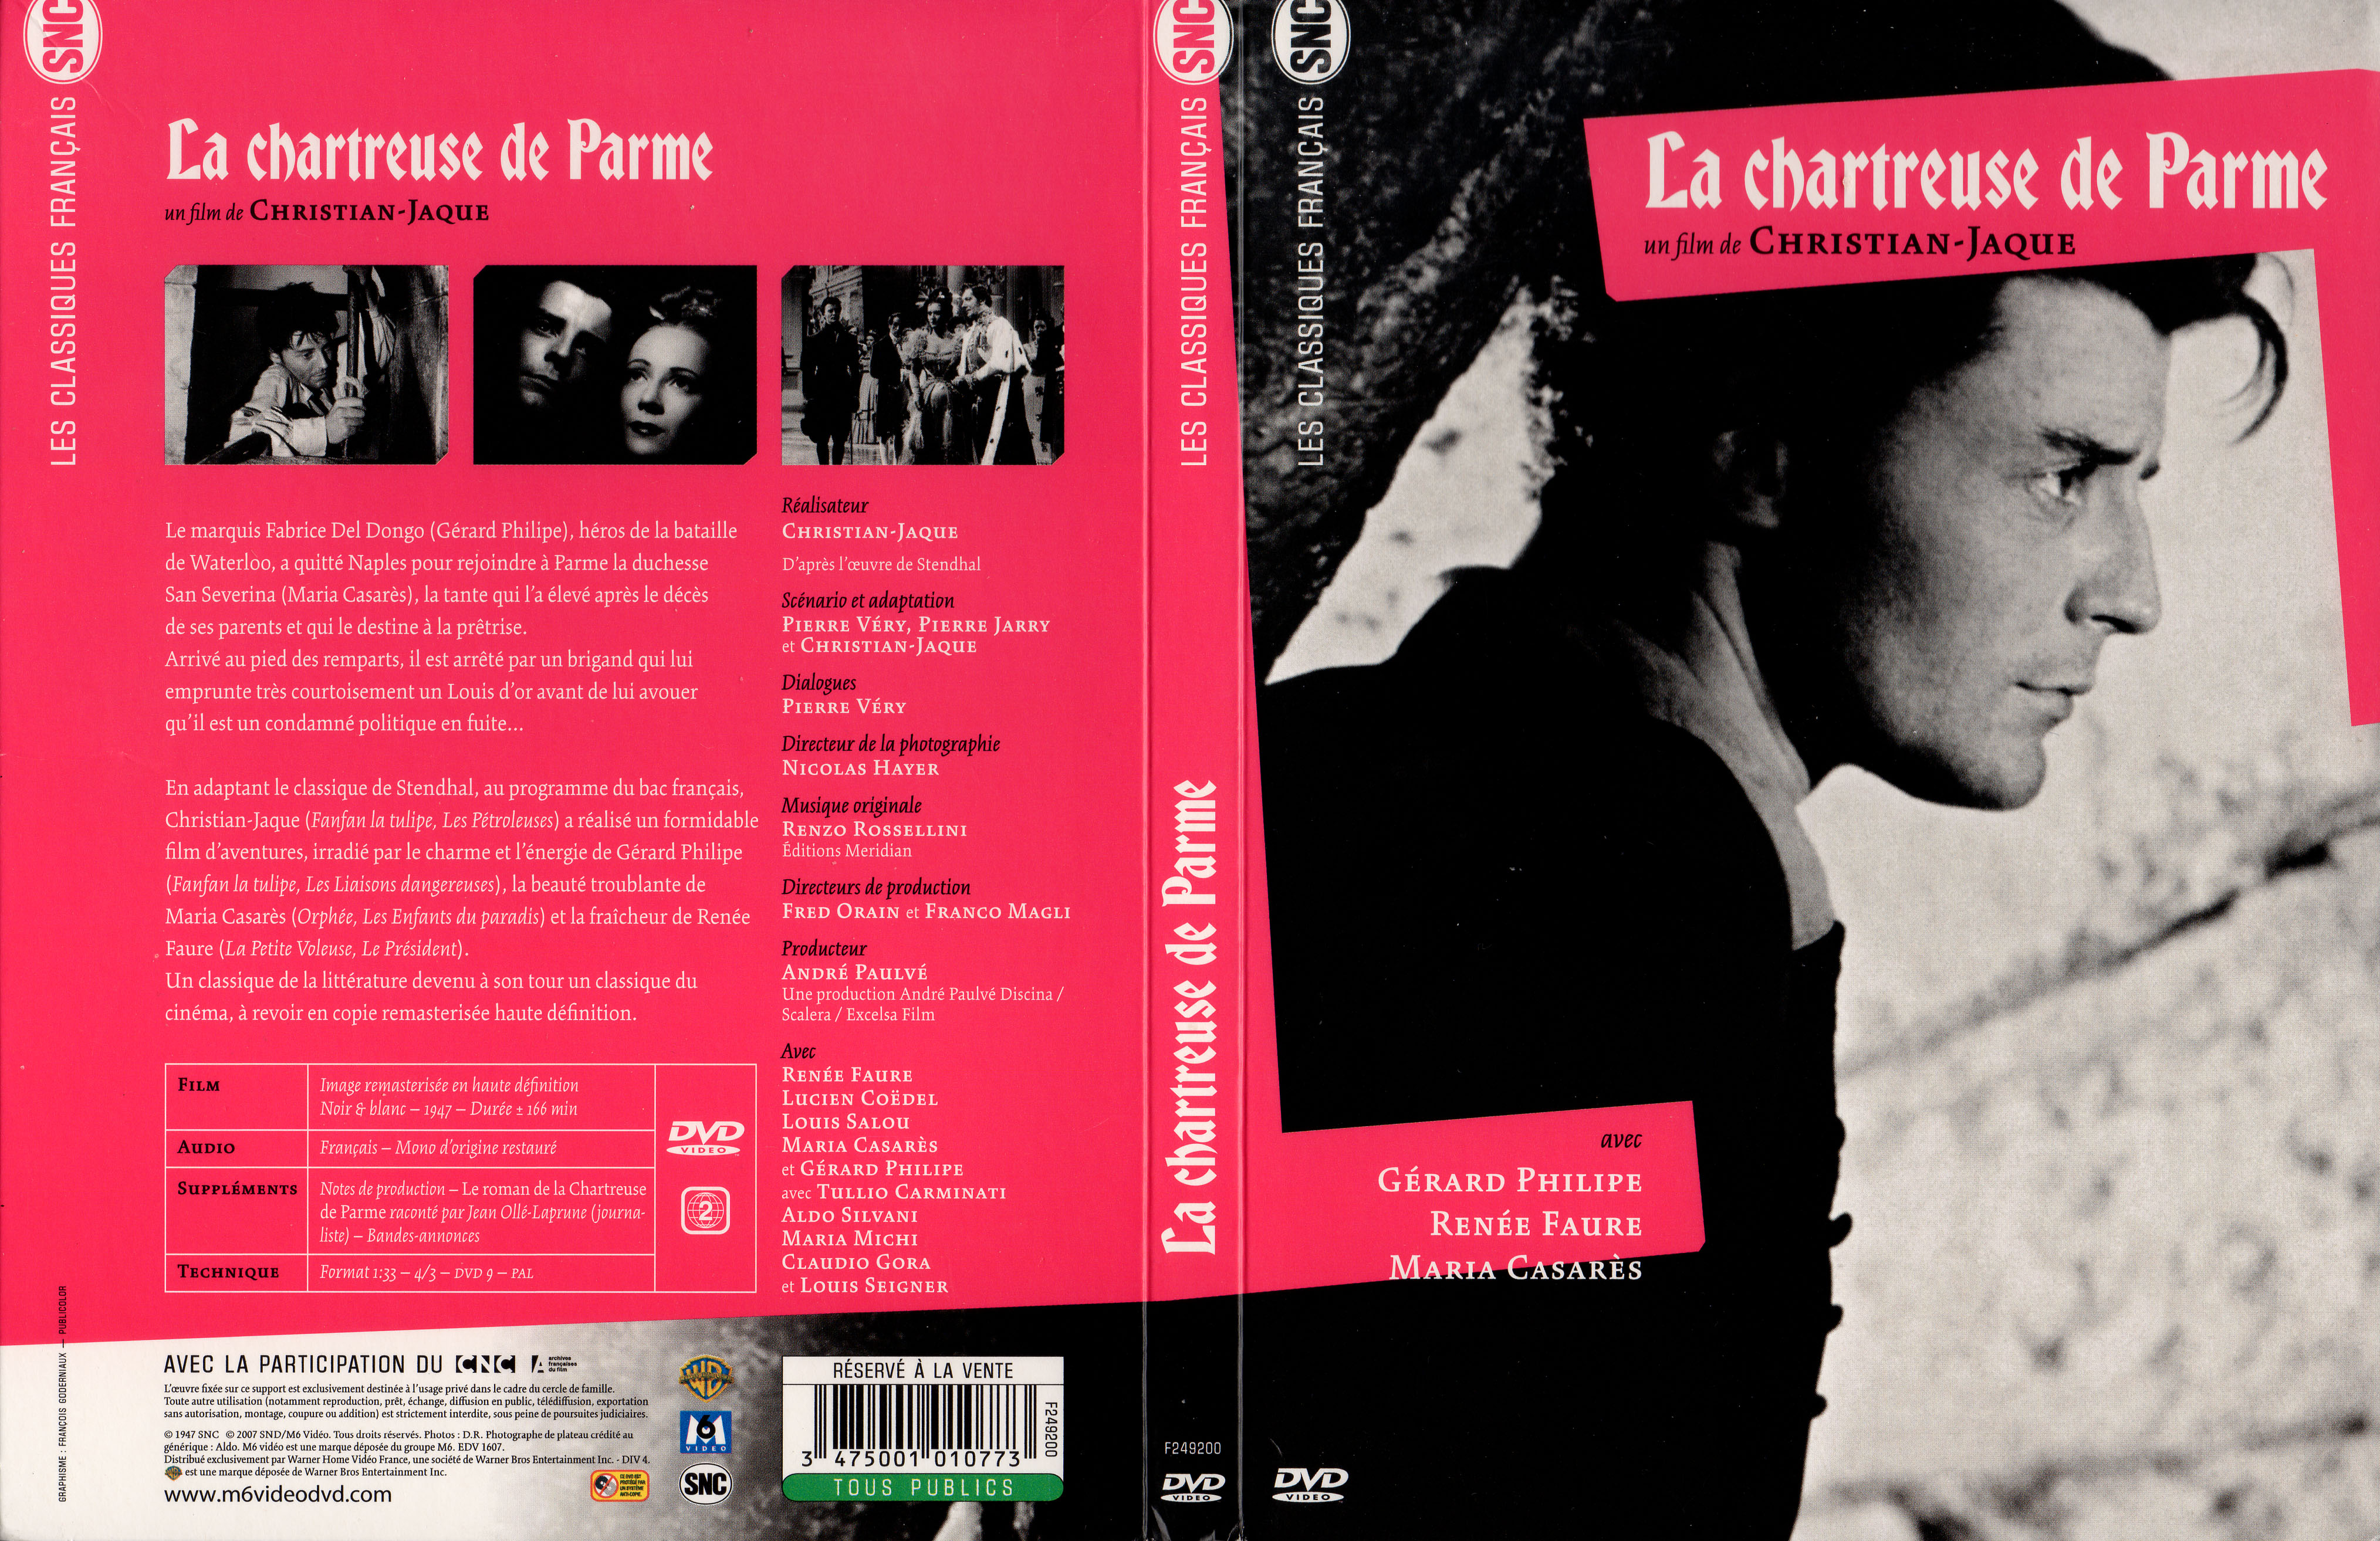 Jaquette DVD La chartreuse de Parme v2